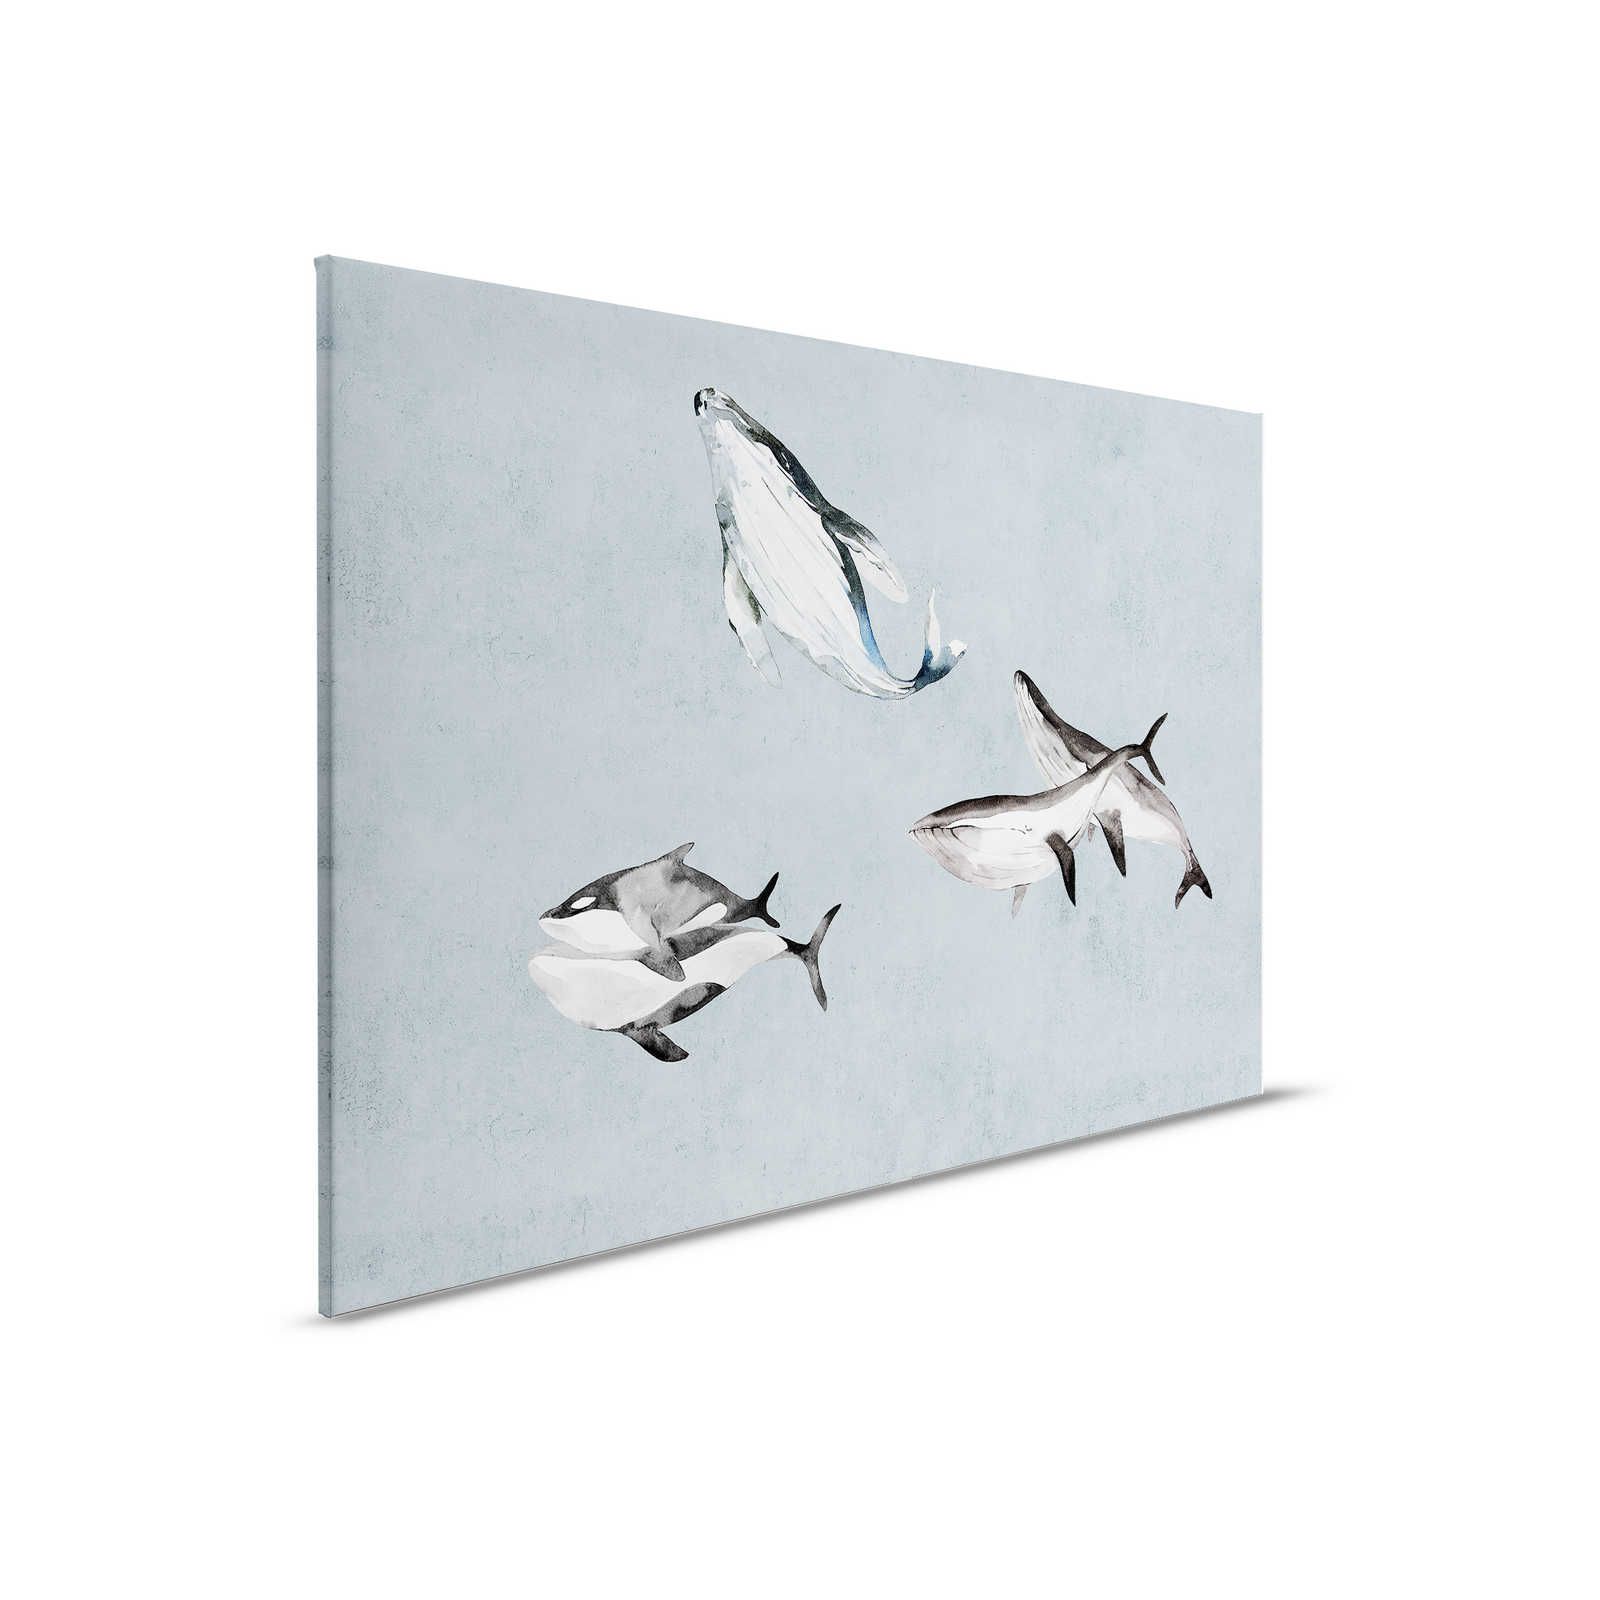 Oceans Five 2 - Canvas schilderij Walvissen onder water Aquarel - 0,90 m x 0,60 m
